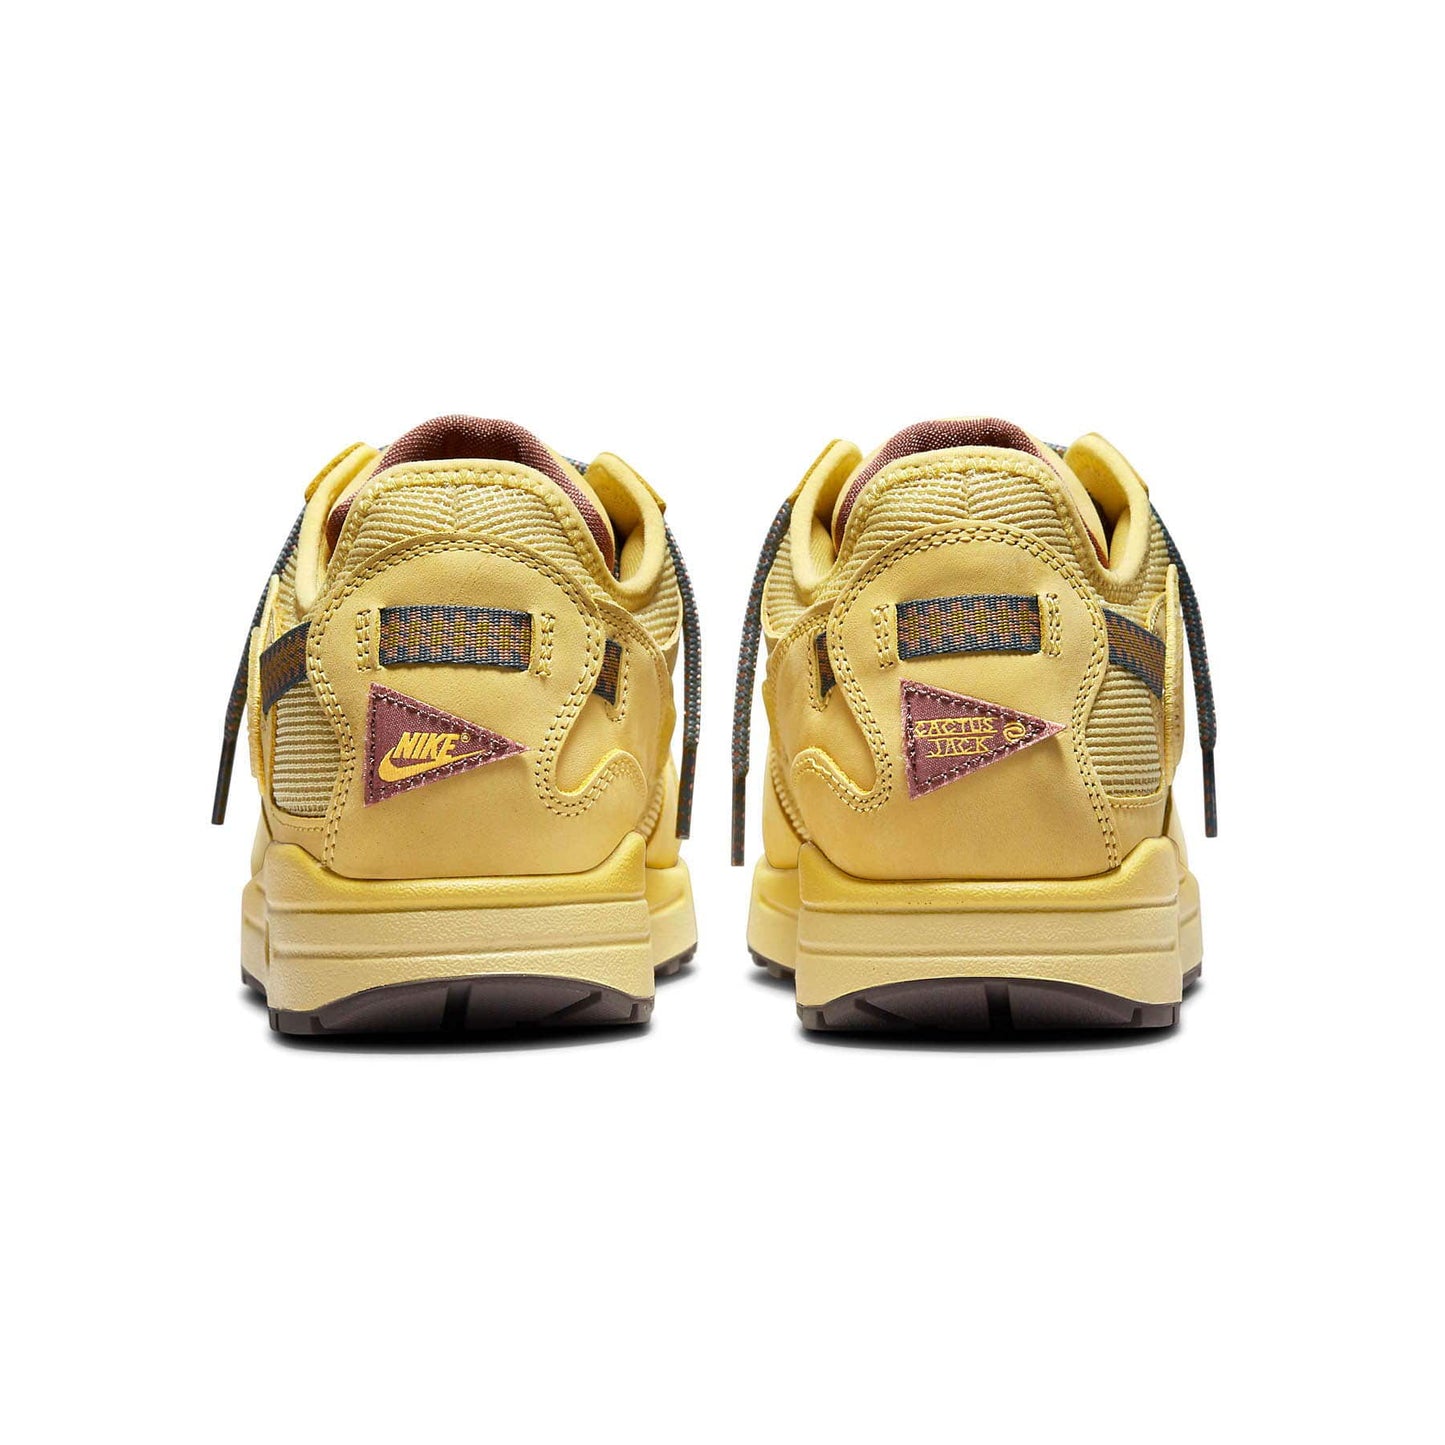 Travis Scott X Nike Air Max 1 'Saturn Gold'